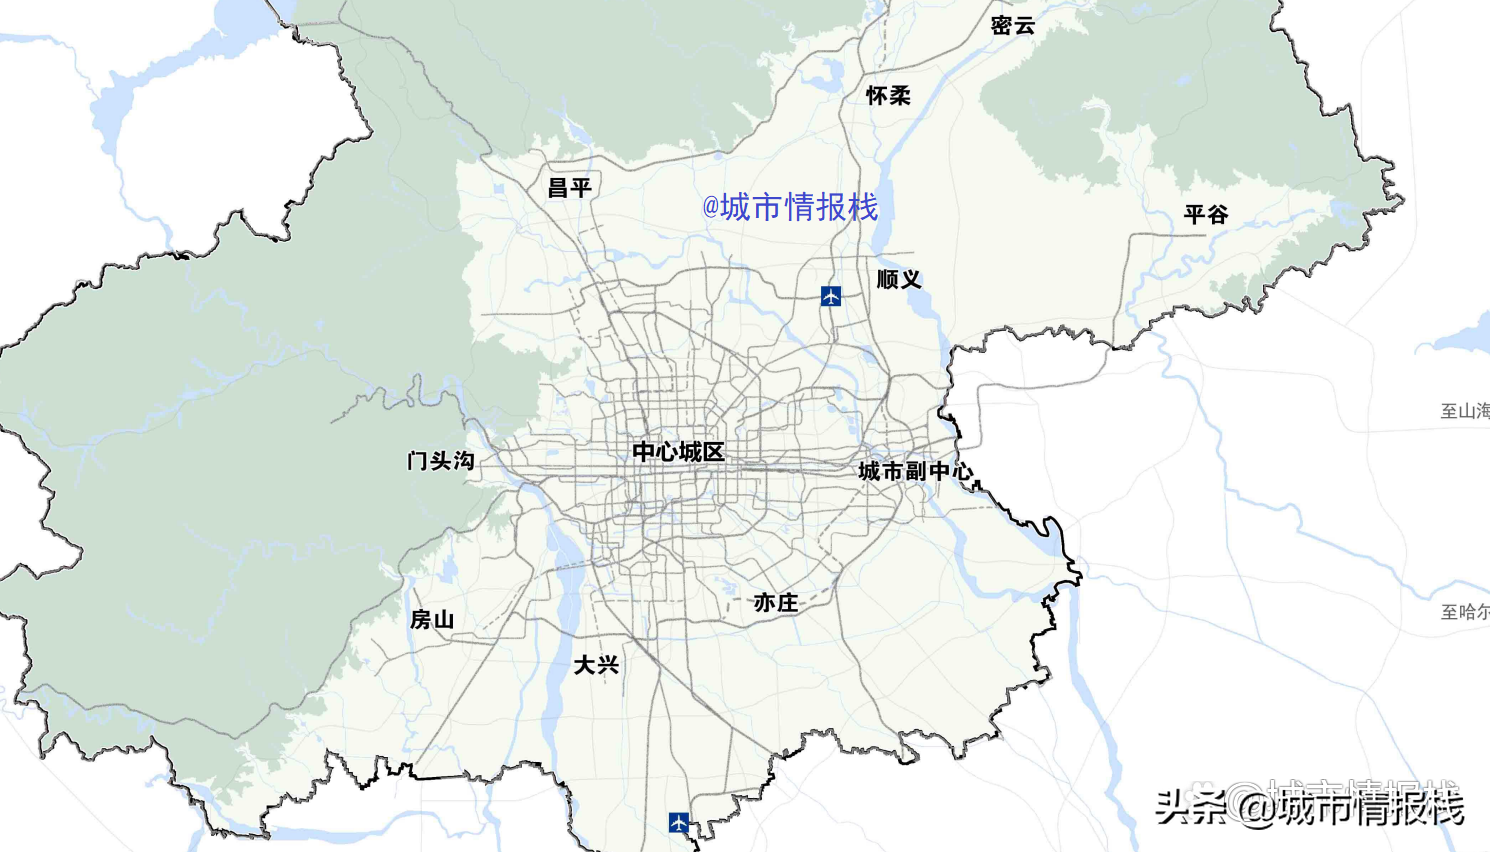 未来15年北京轨道交通线网规划，公示反馈意见，很多都被采纳了